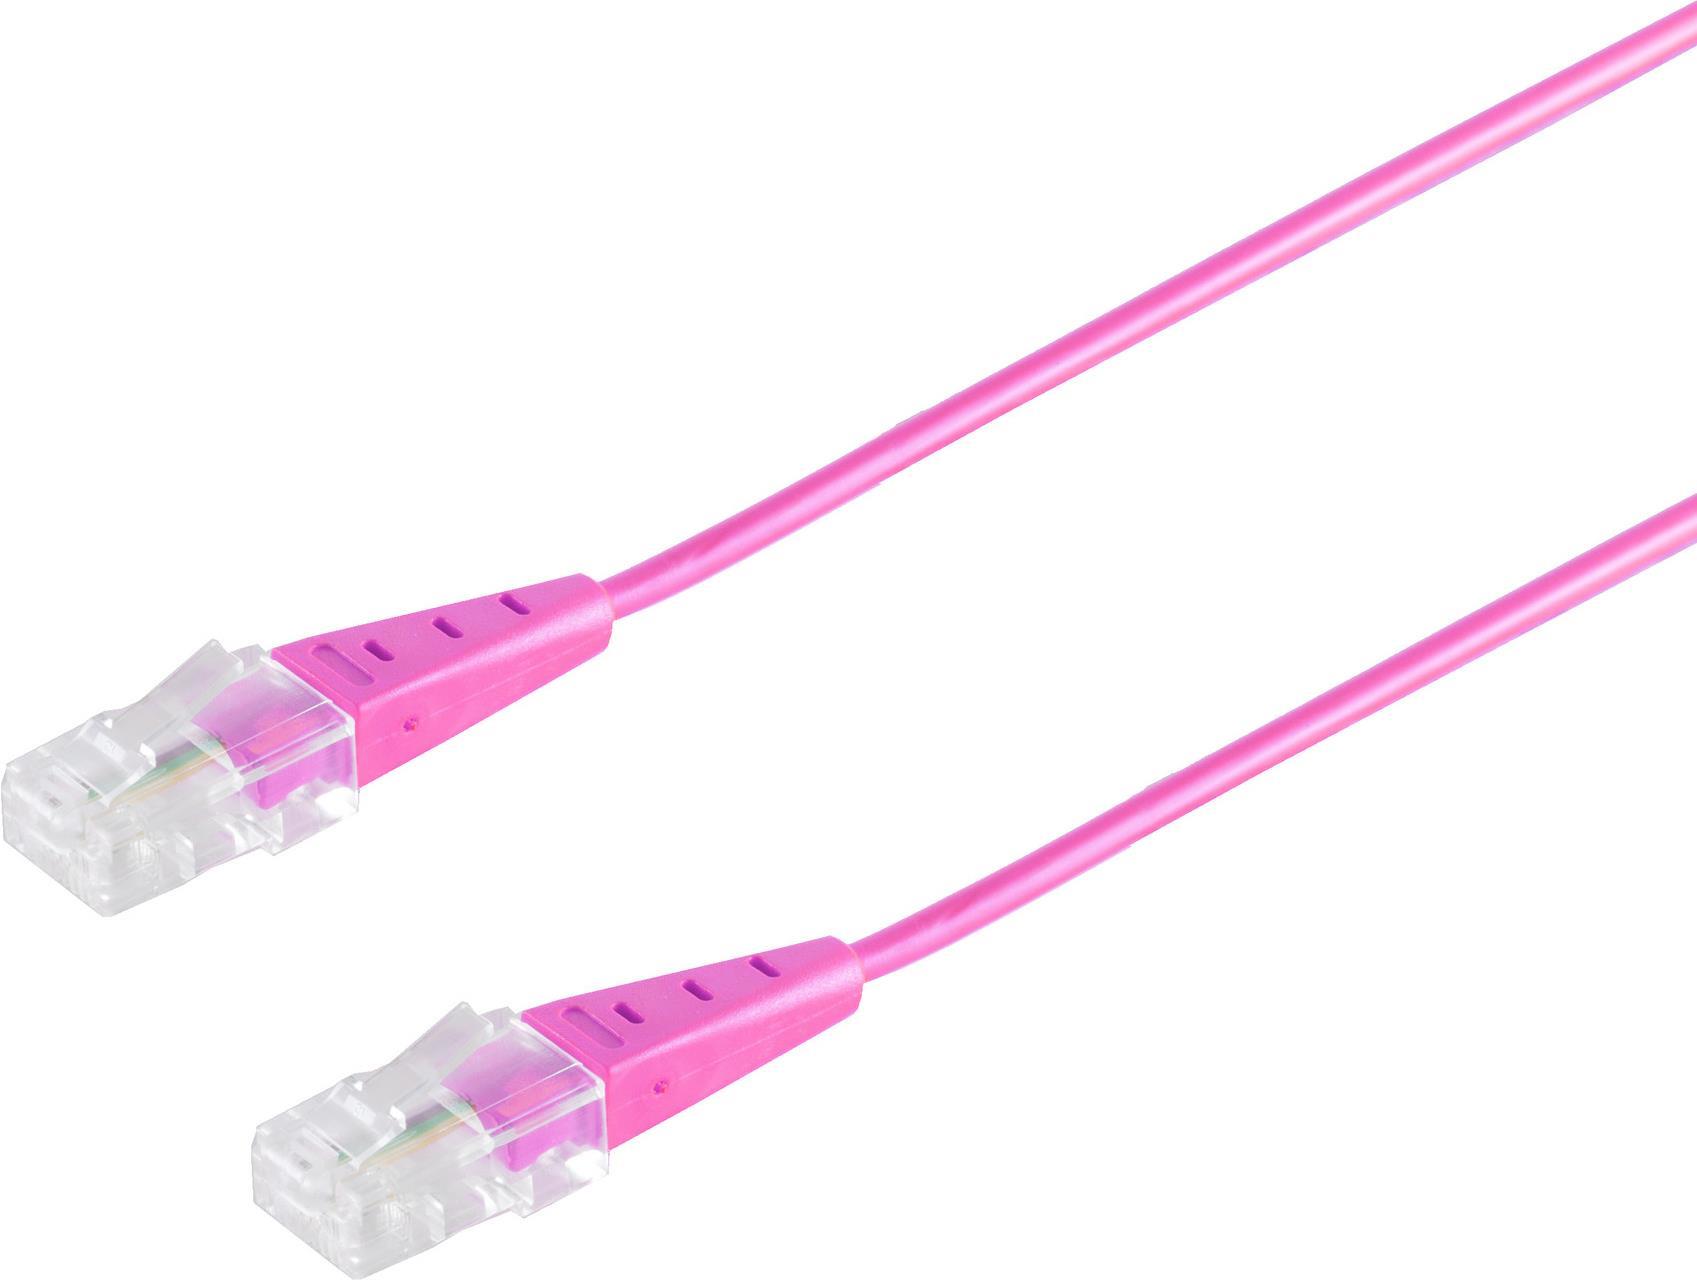 S/CONN maximum connectivity ISDN-Anschlusskabel, RJ45 Stecker auf RJ45 Stecker, Rundkabel, 4-adrig, magenta, 2,0m (70078-M-2)